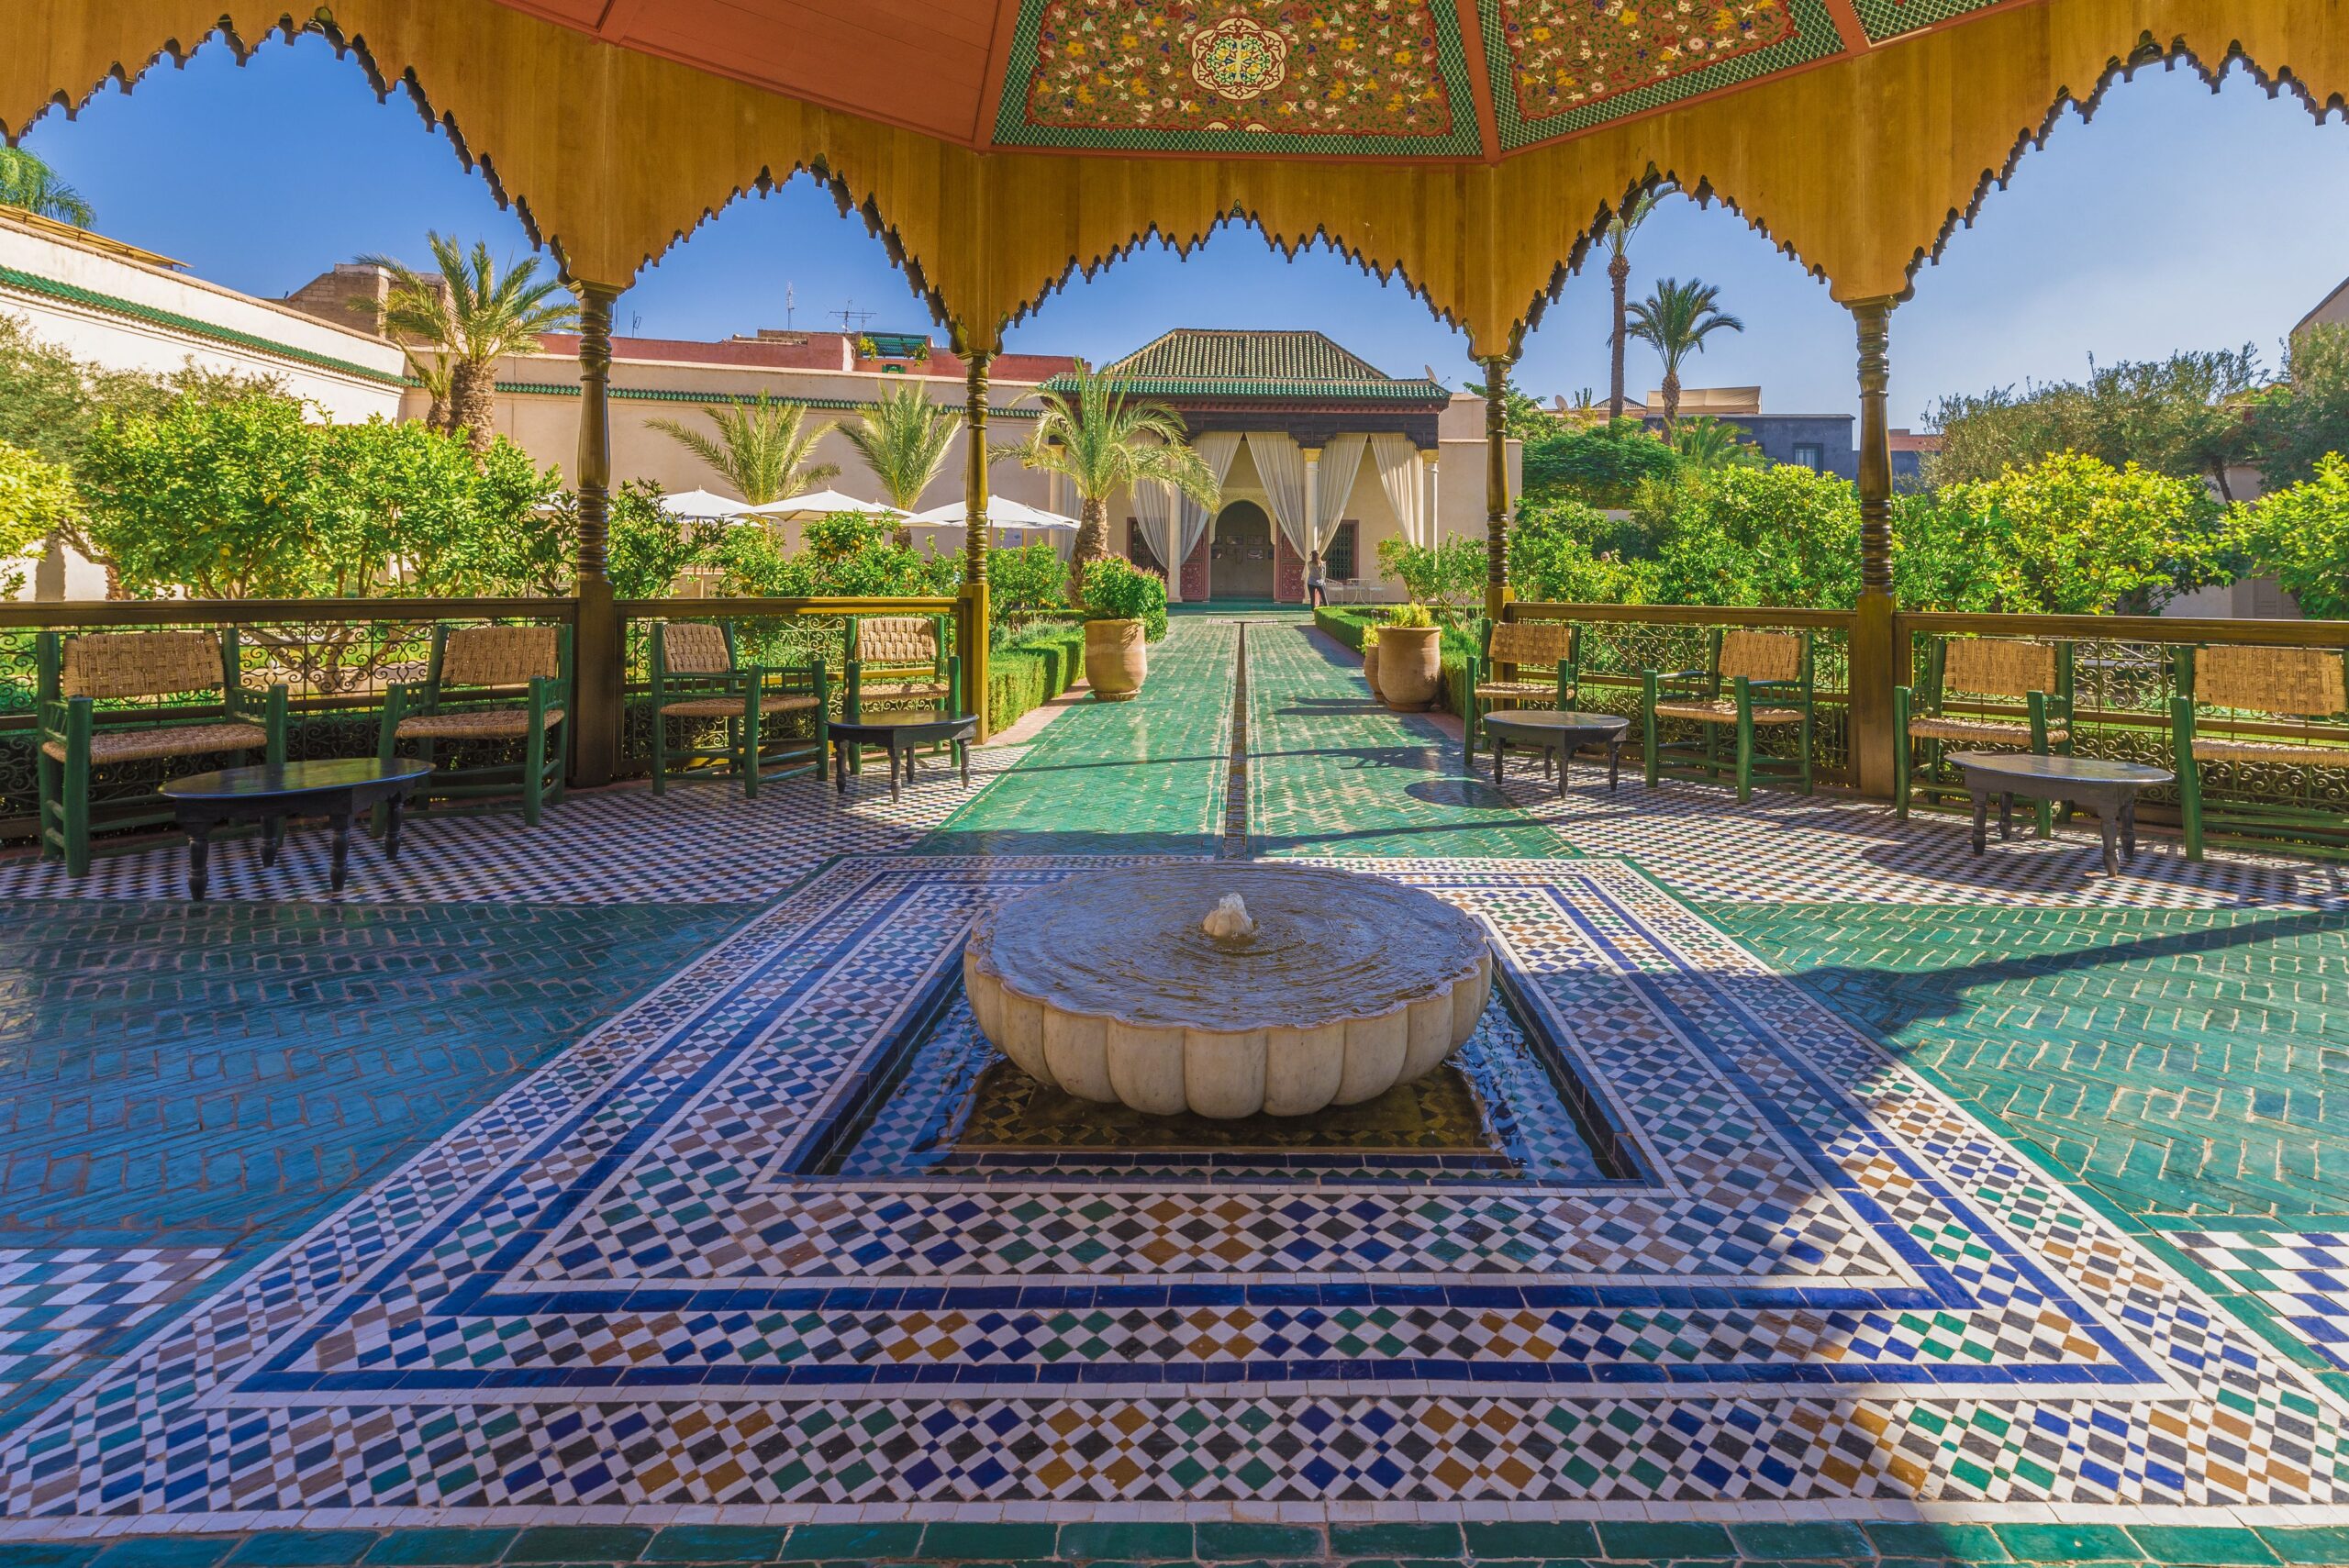 Marrakech, Morocco – Jardin Majorelle and Medina